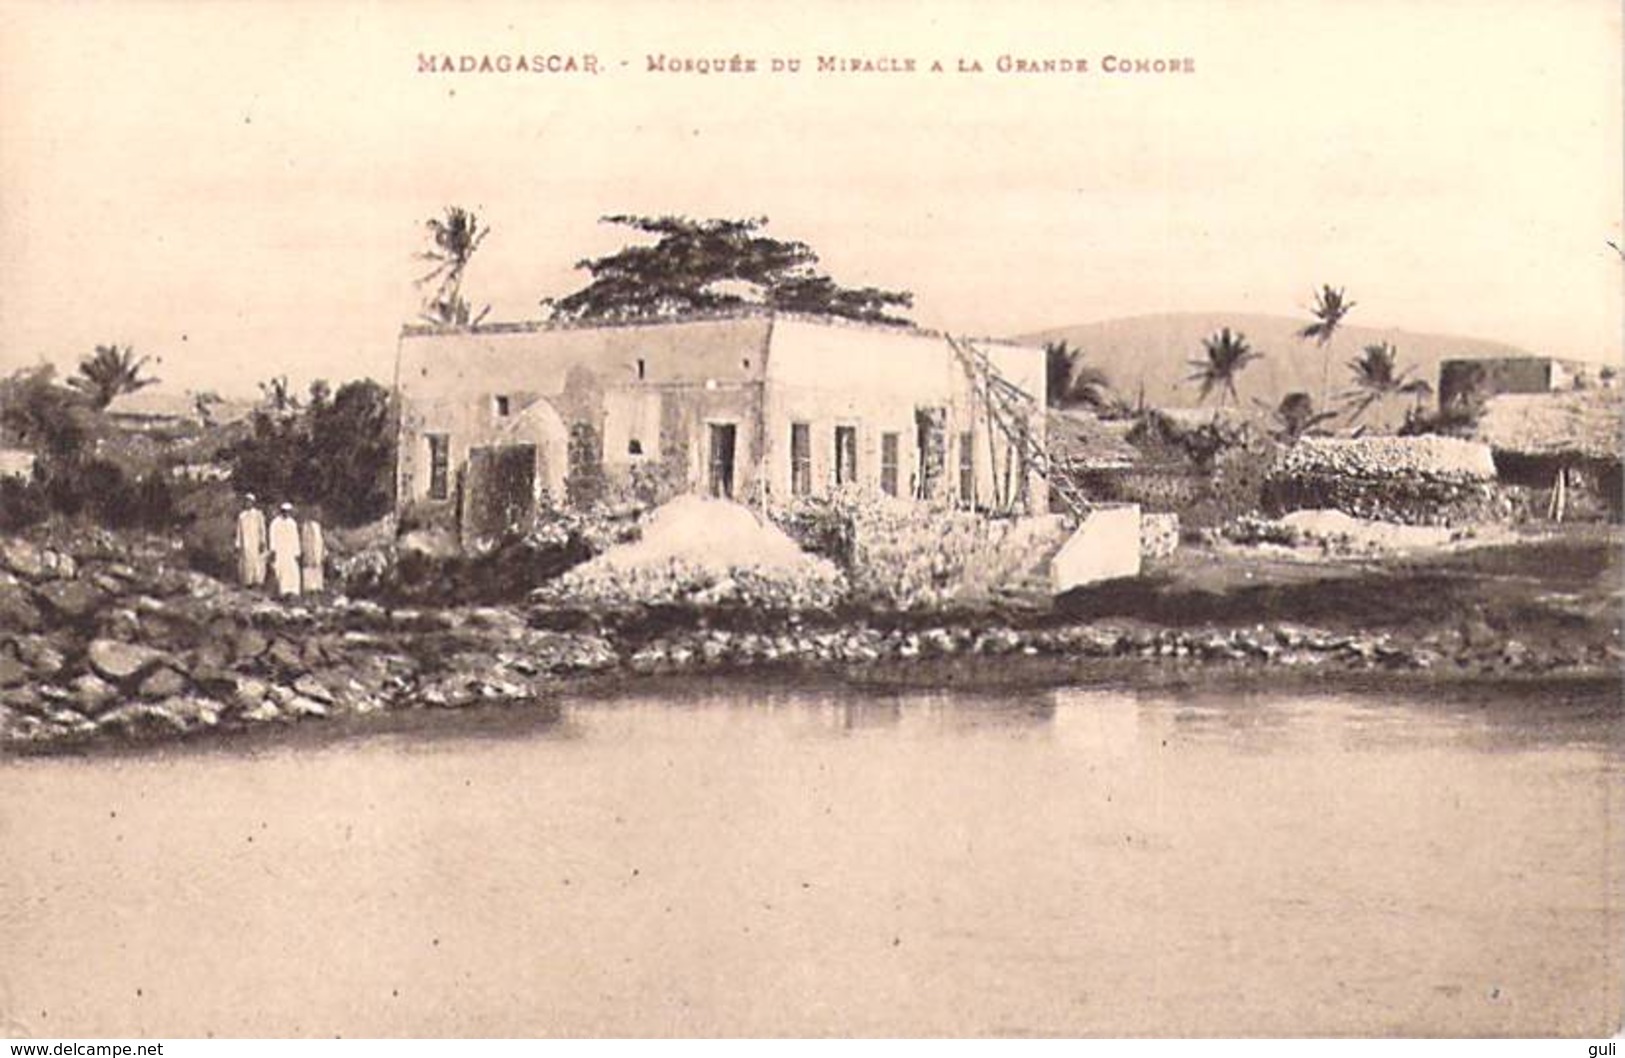 Afrique  (MADAGASCAR) Mosquée Du Miracle à La Grande Comore *PRIX FIXE - Komoren